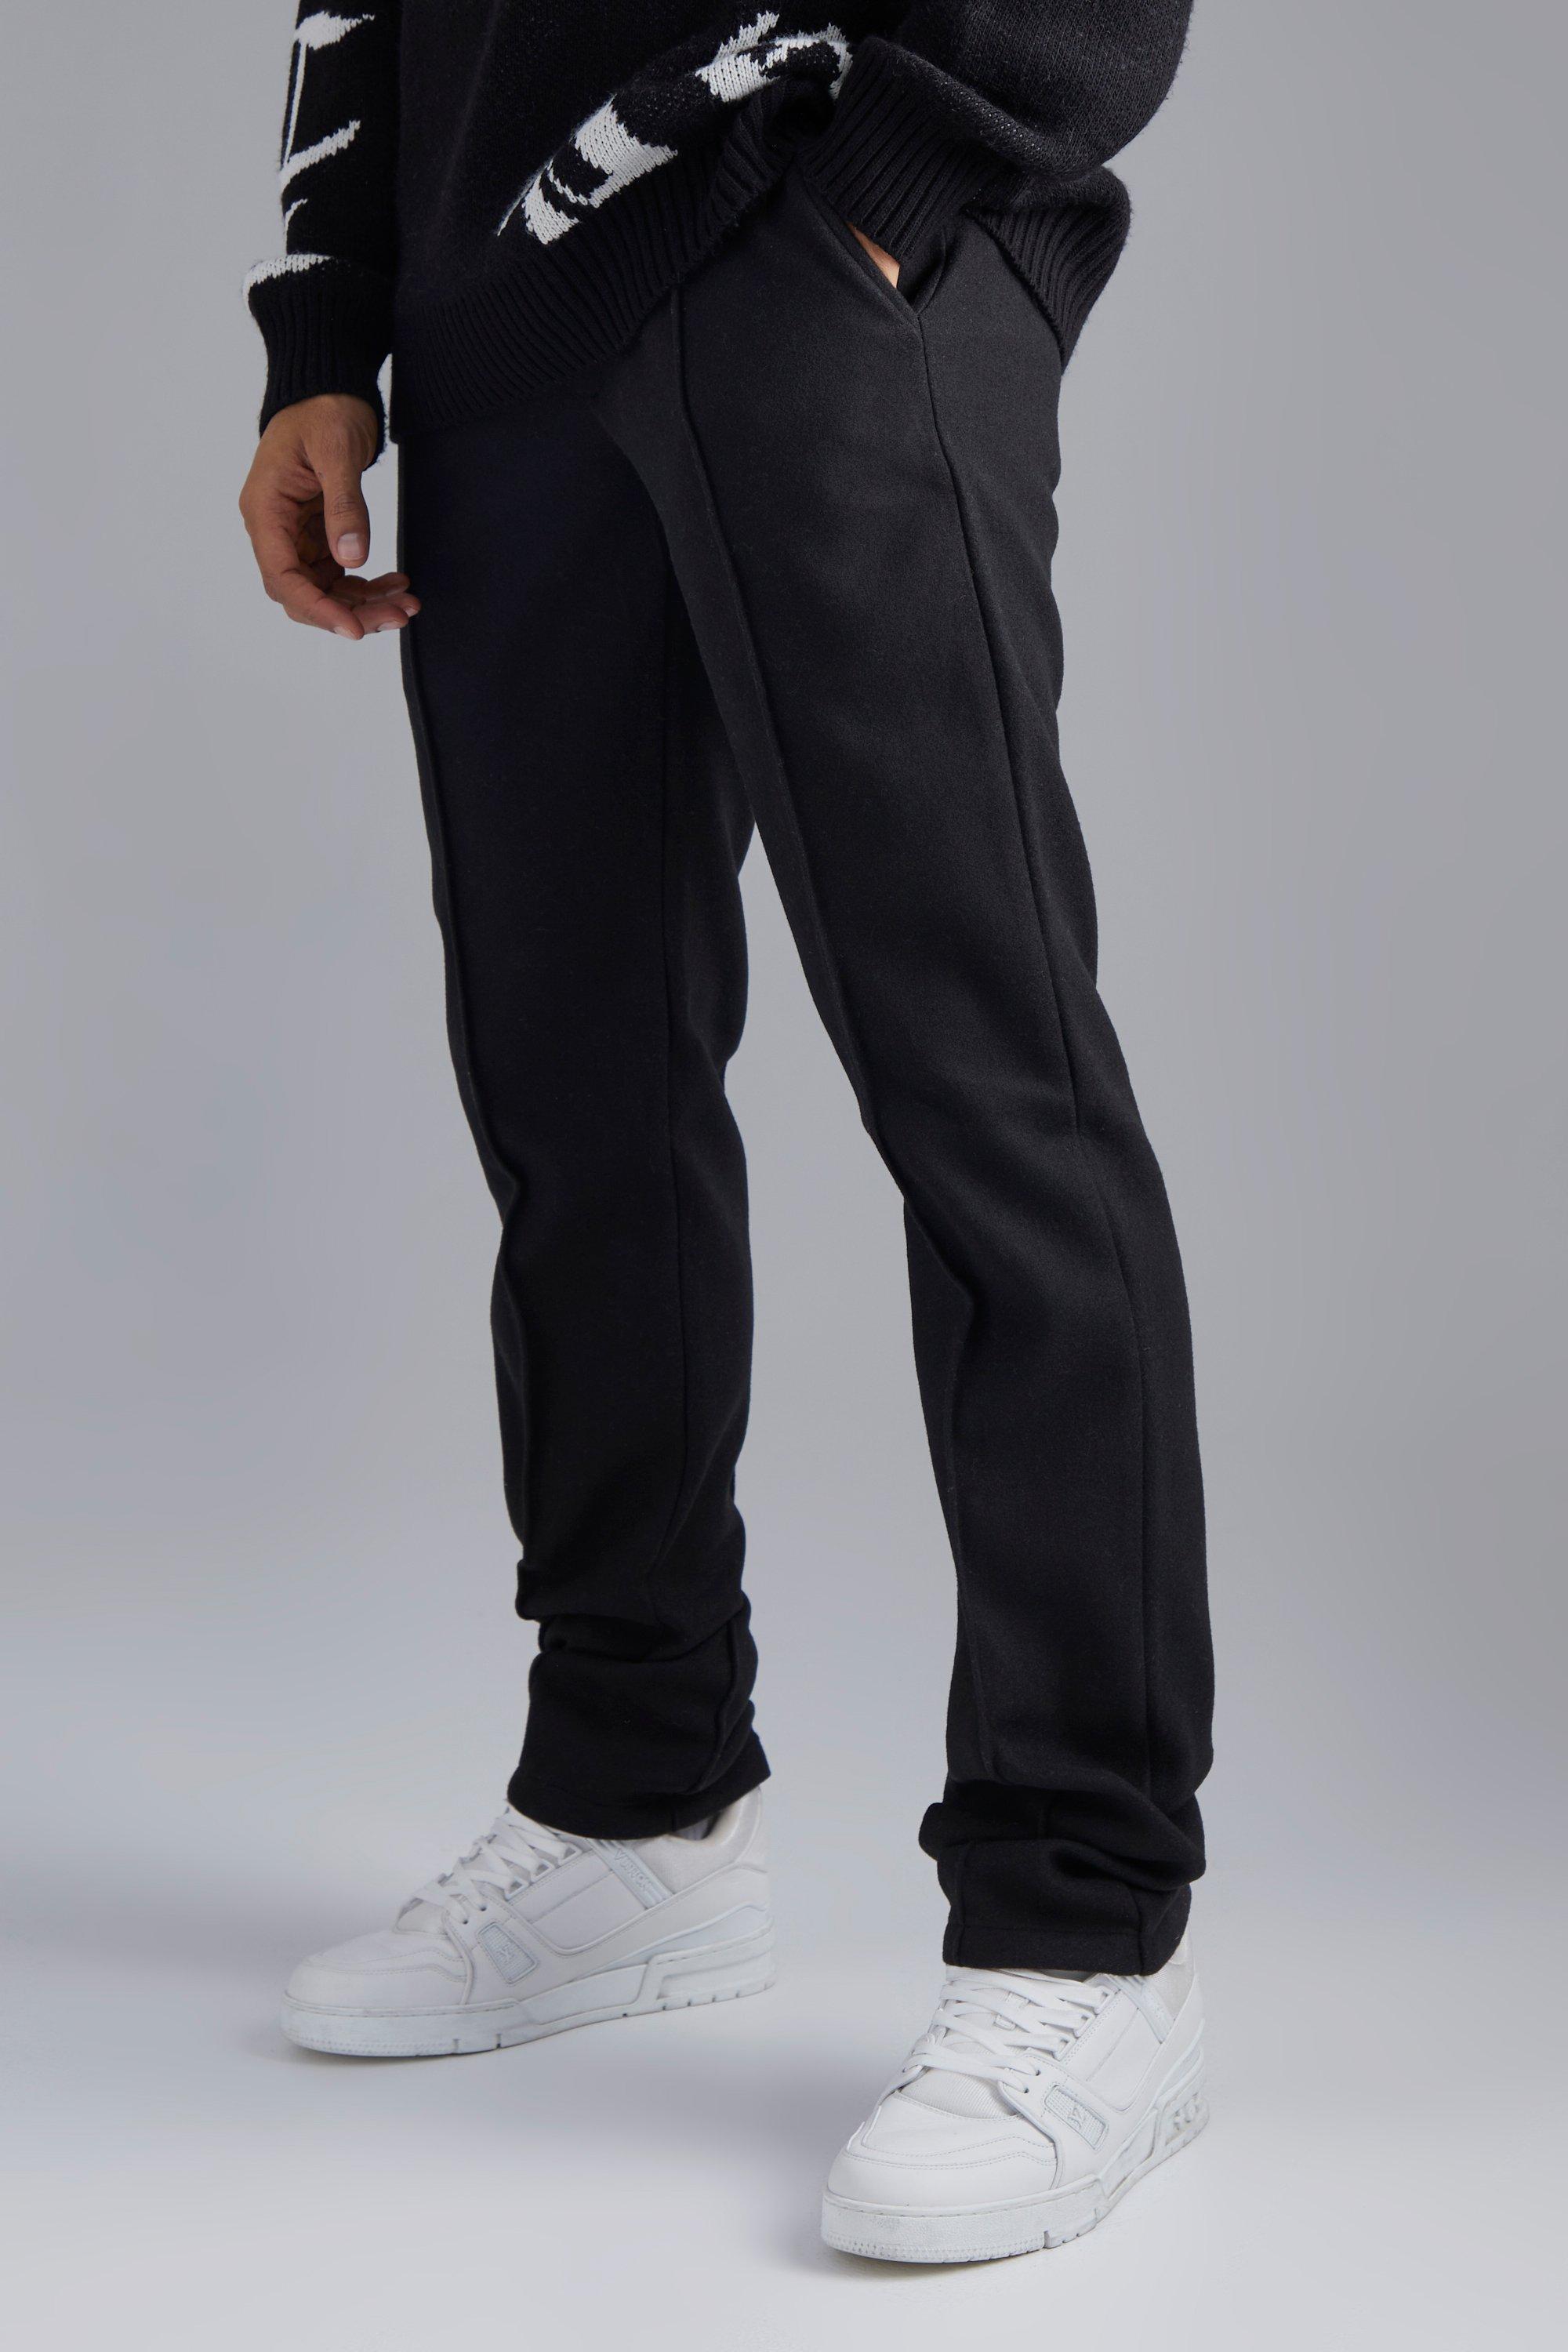 pantalon droit effet laine homme - noir - 28, noir